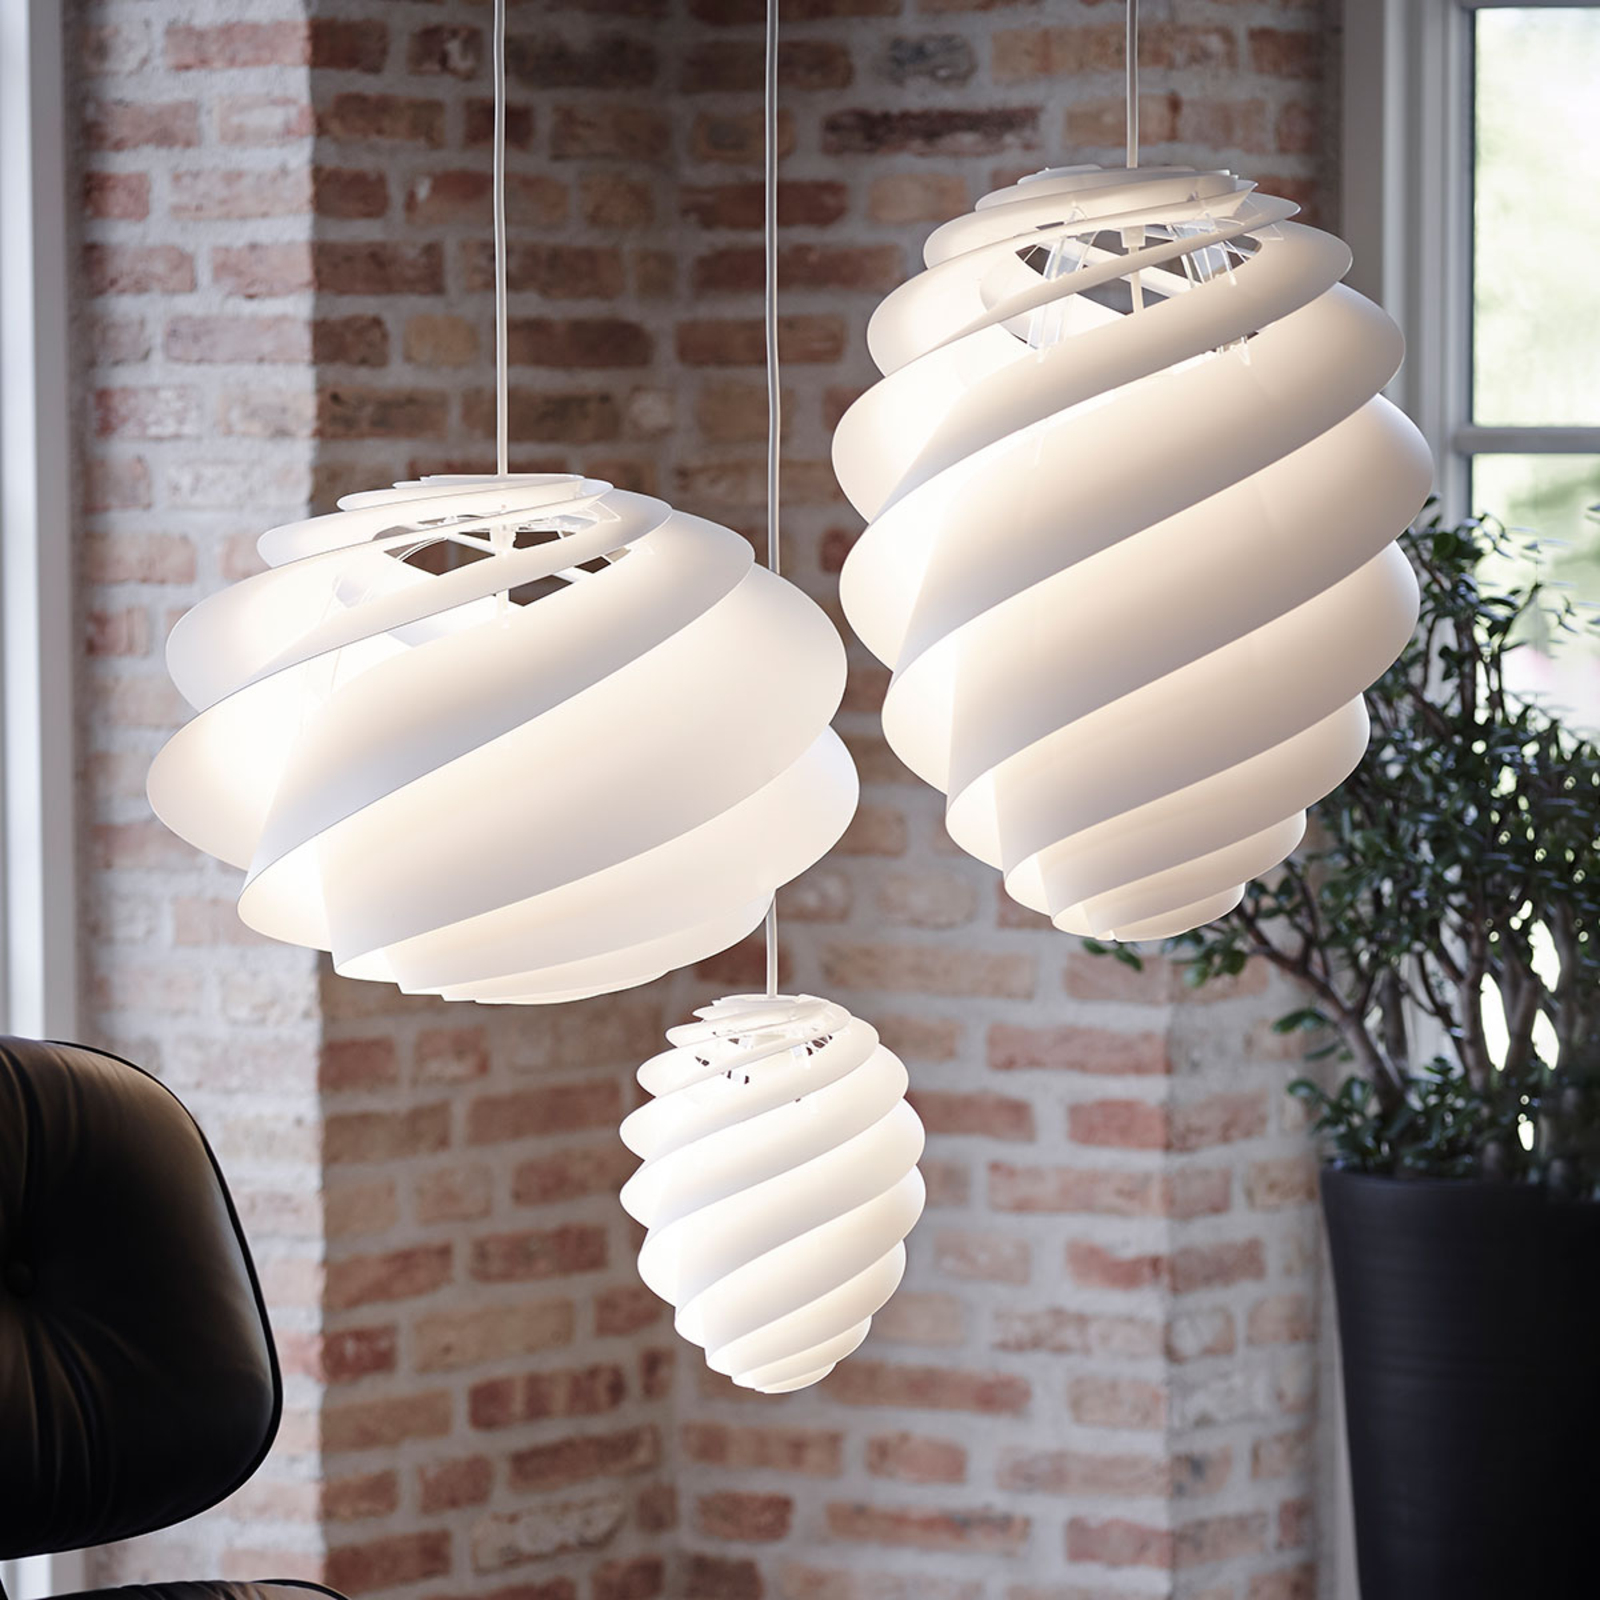 LE KLINT Swirl 1 – designer pendant light, white